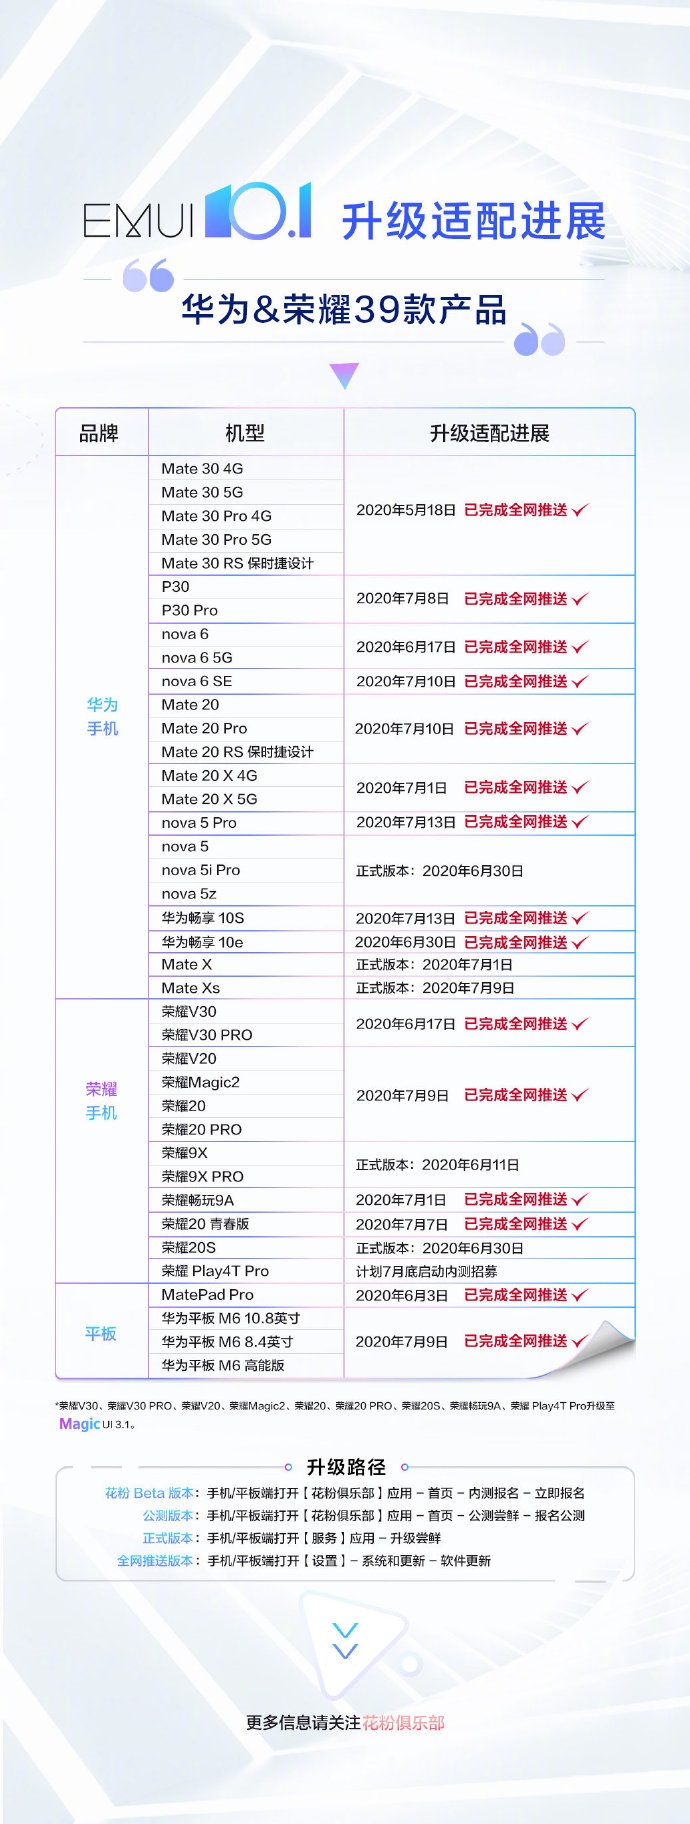 华为公司/荣誉 30 款商品早已进行 EMUI 10.1 各大网站消息推送